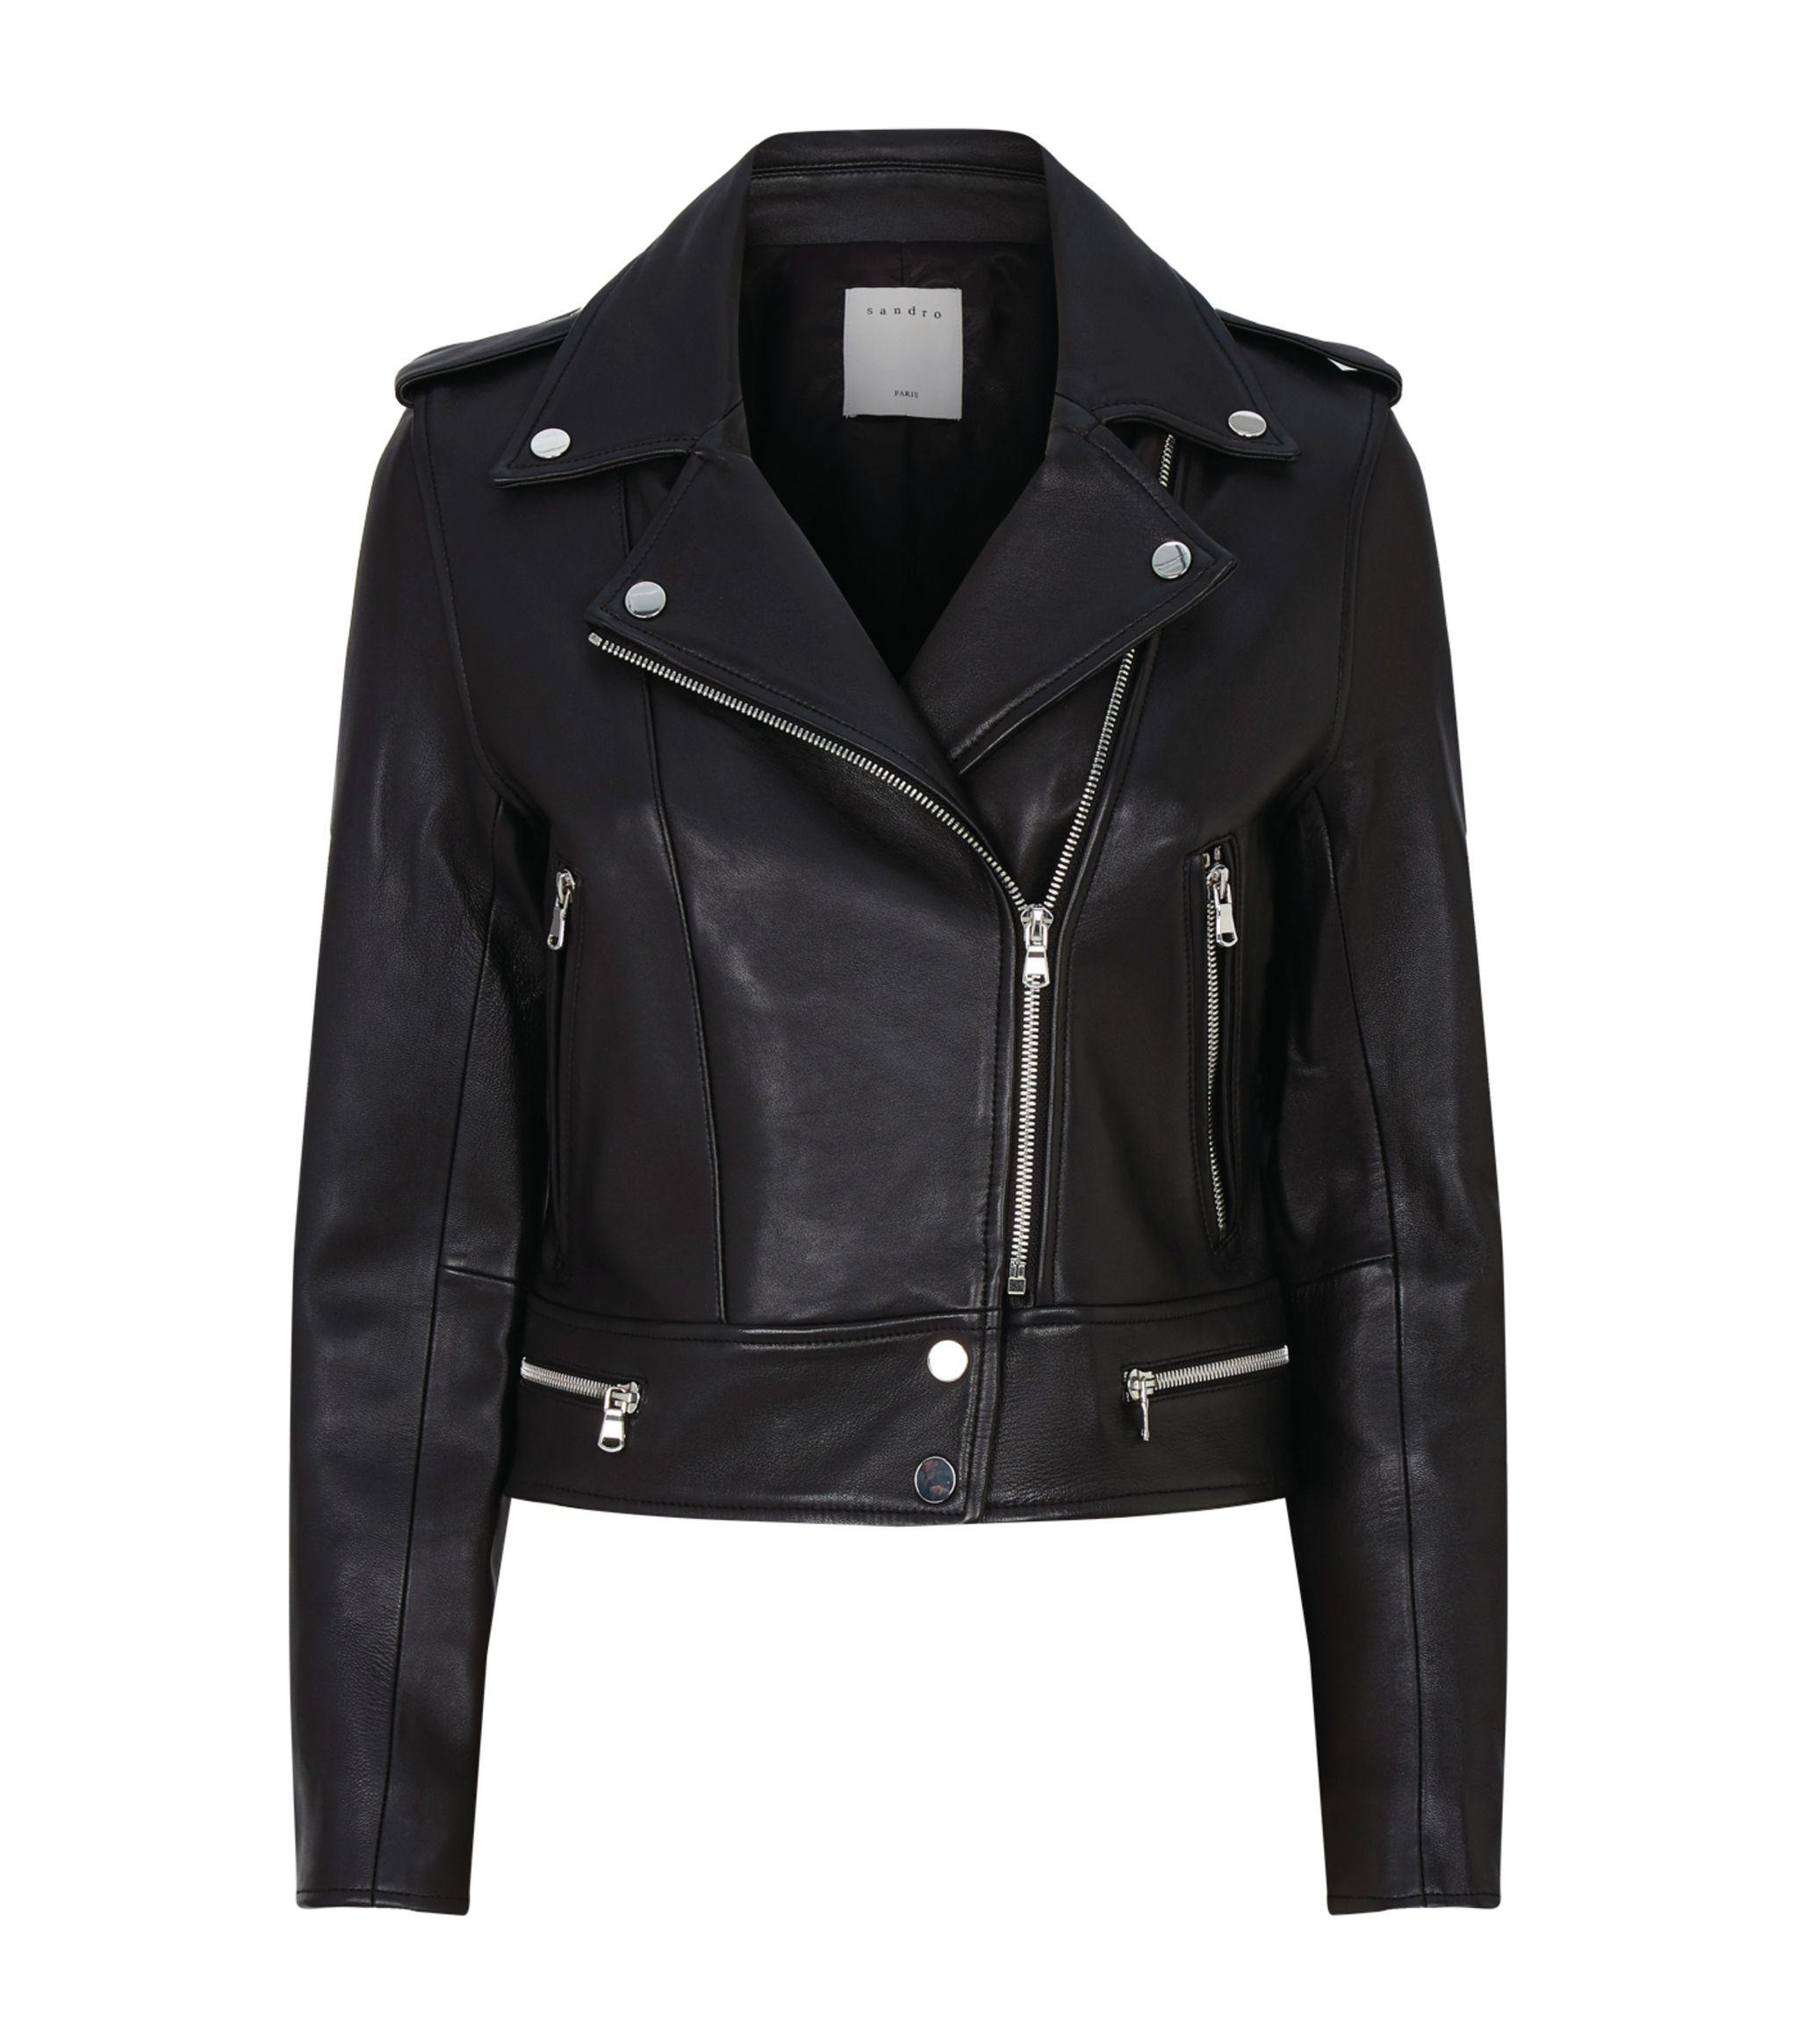 Sandro Leather Biker Jacket in Black - Lyst